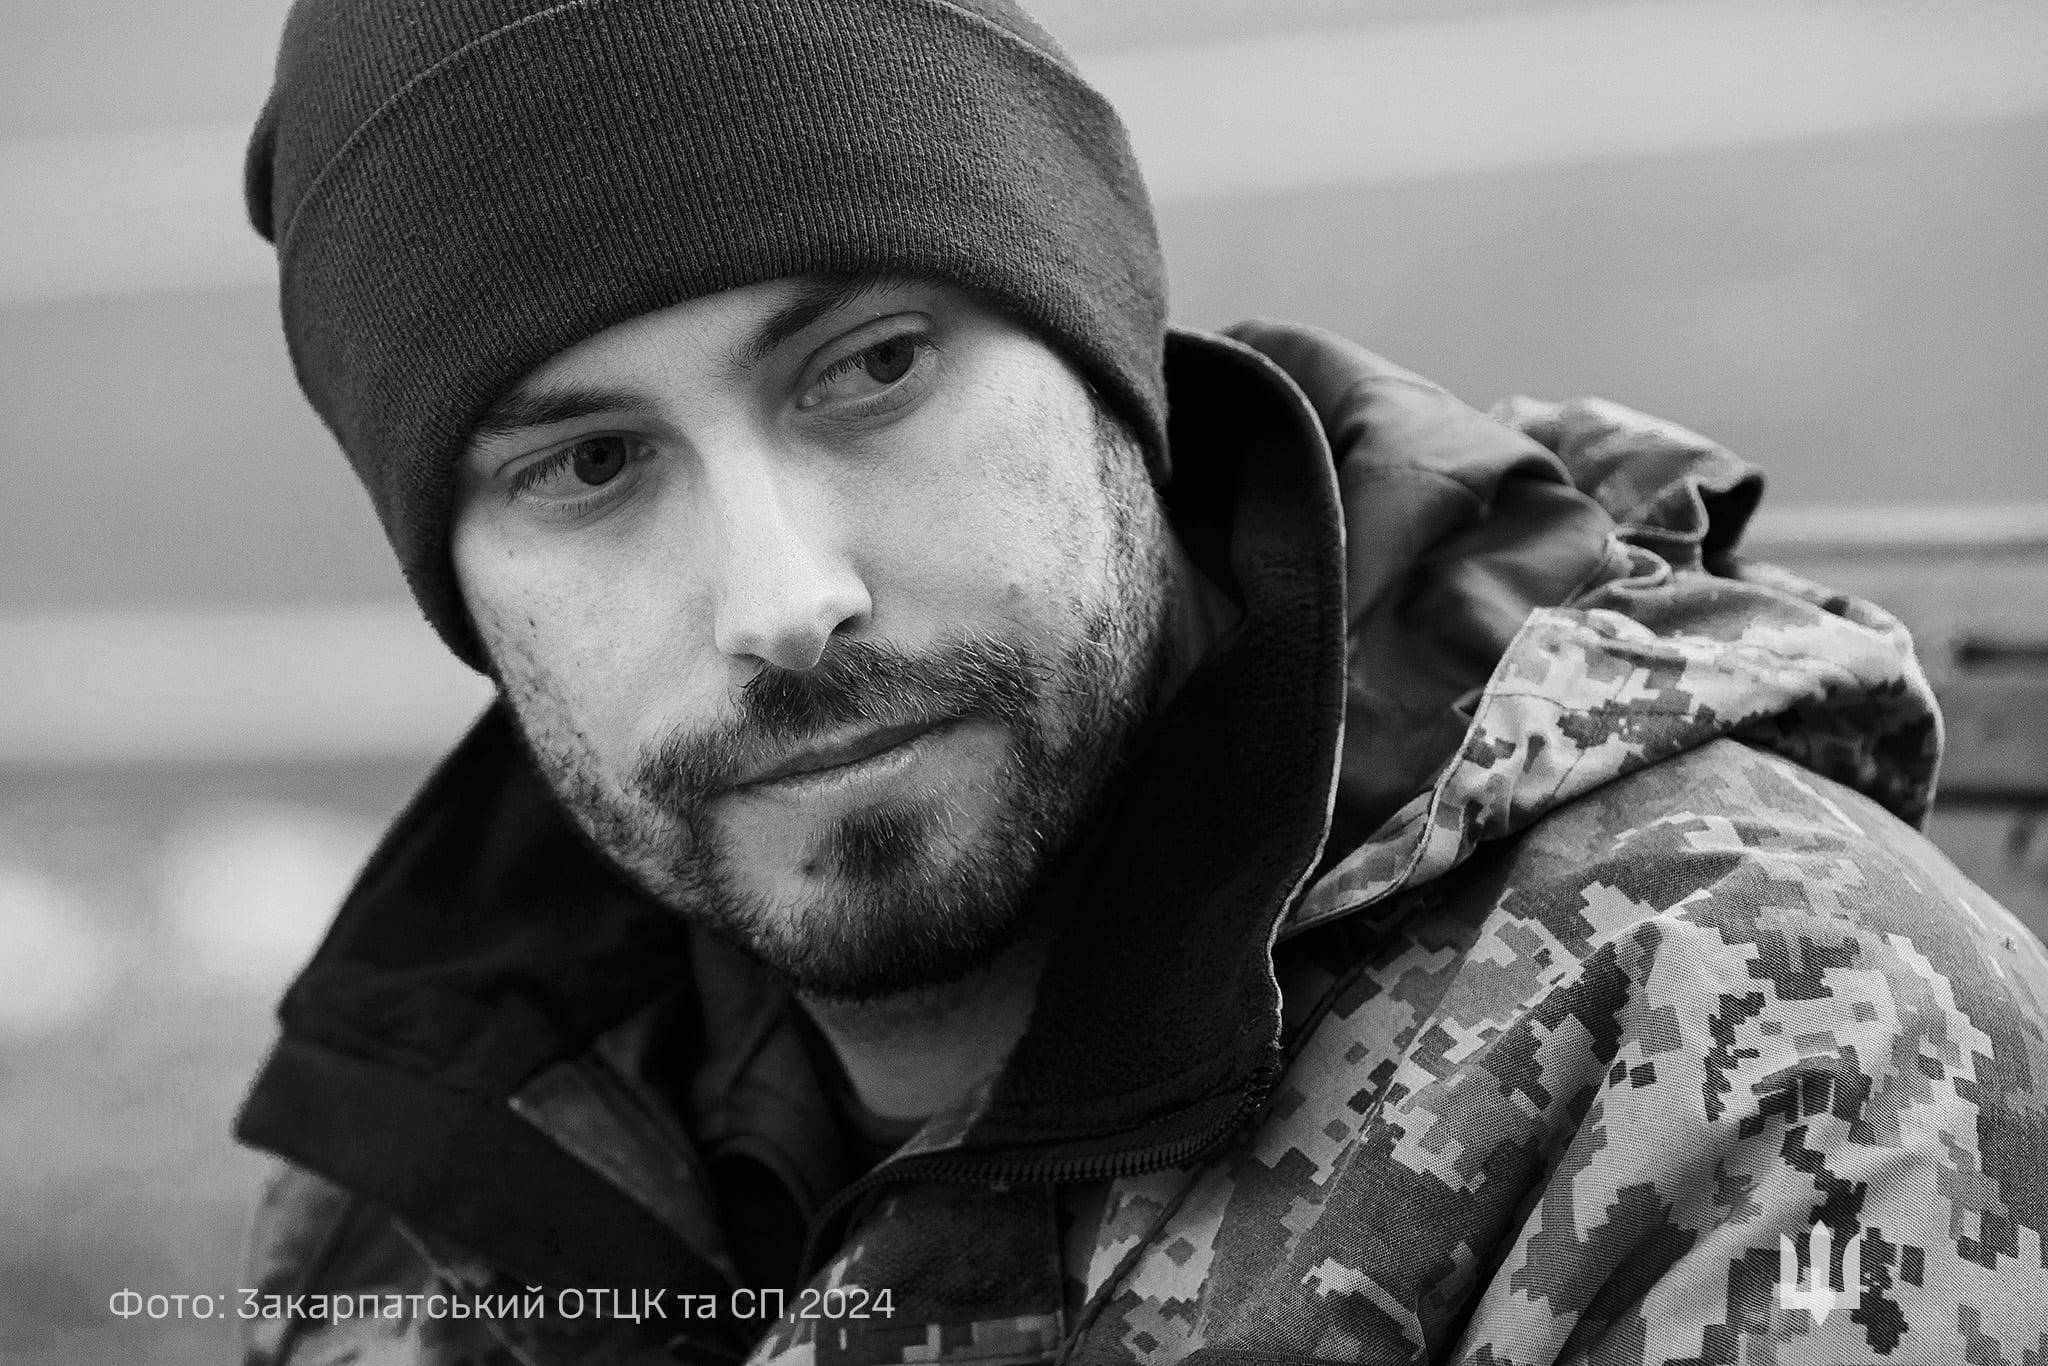 Молодший сержант Юлій «Історик» захищав Україну у 2014-2015 роках, без вагань став на  захист у лютому 2022-го, зараз служить в Ужгородському РТЦК та СП